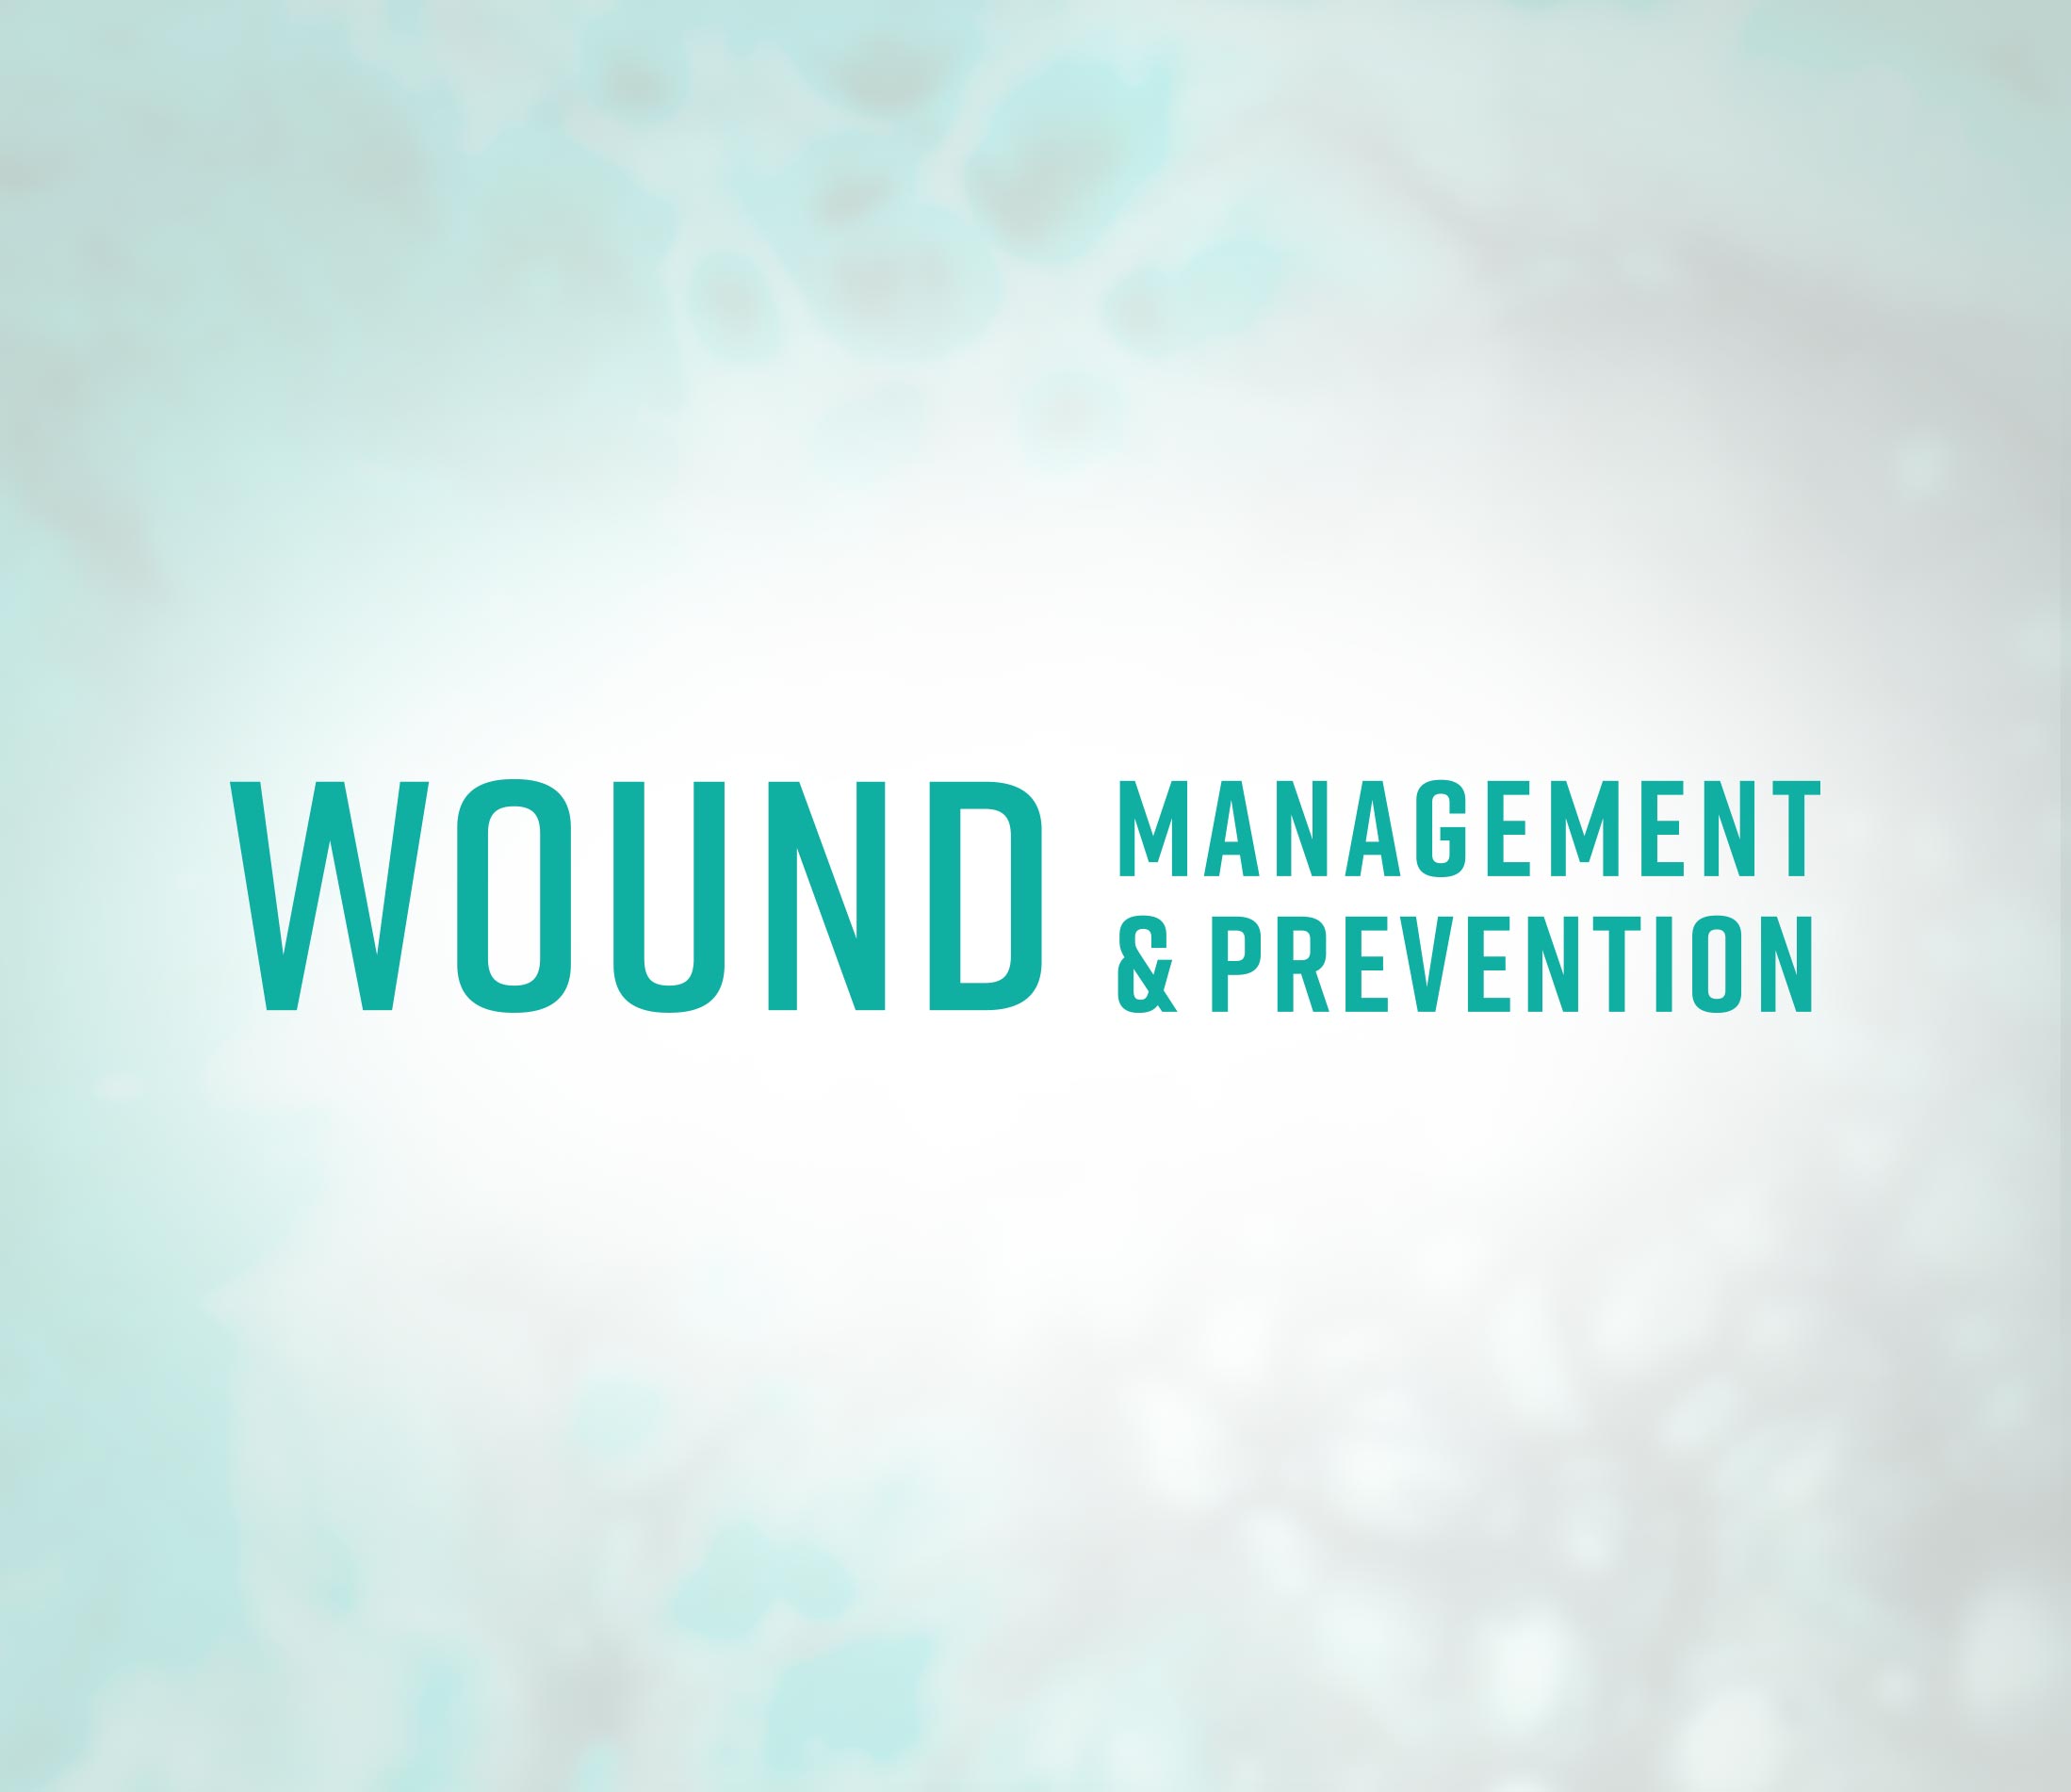 Wound Management & Prevention